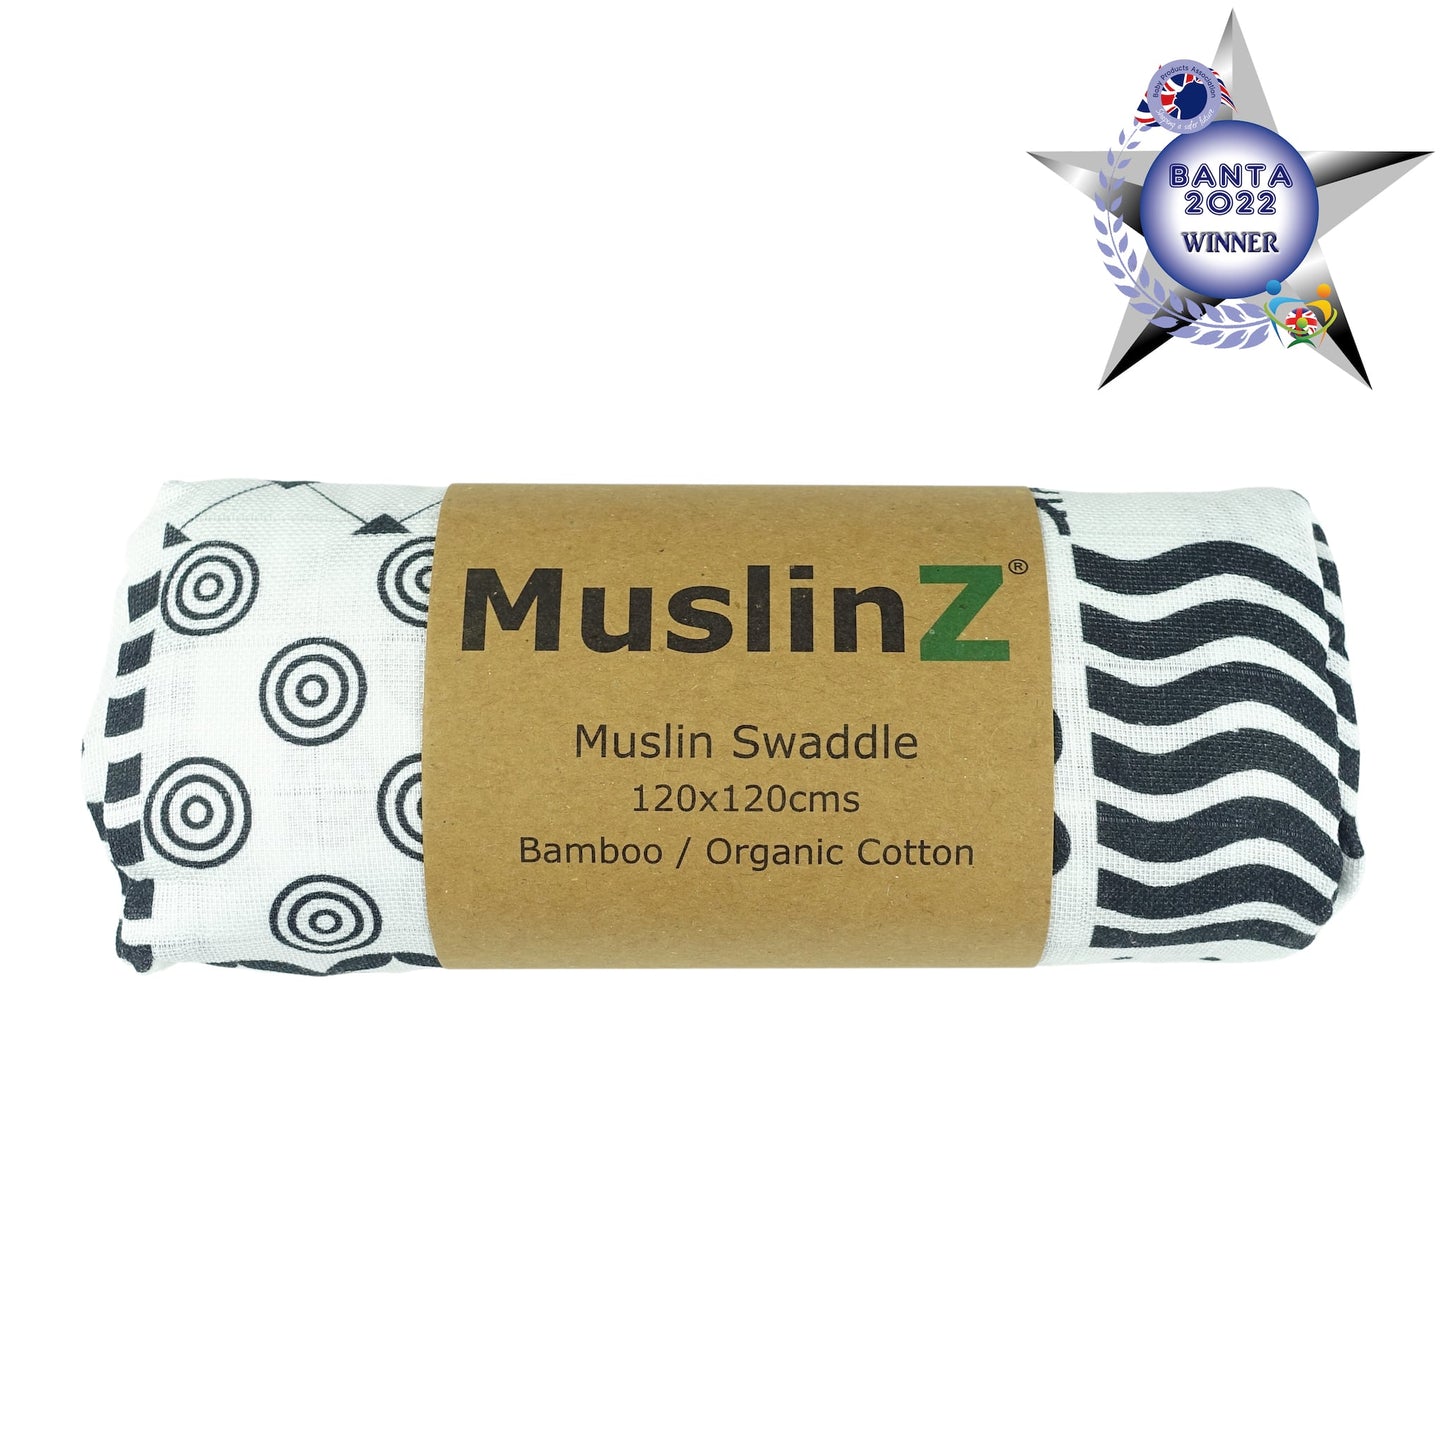 MuslinZ Bamboo/Organic Cotton Muslin Swaddle Sensory